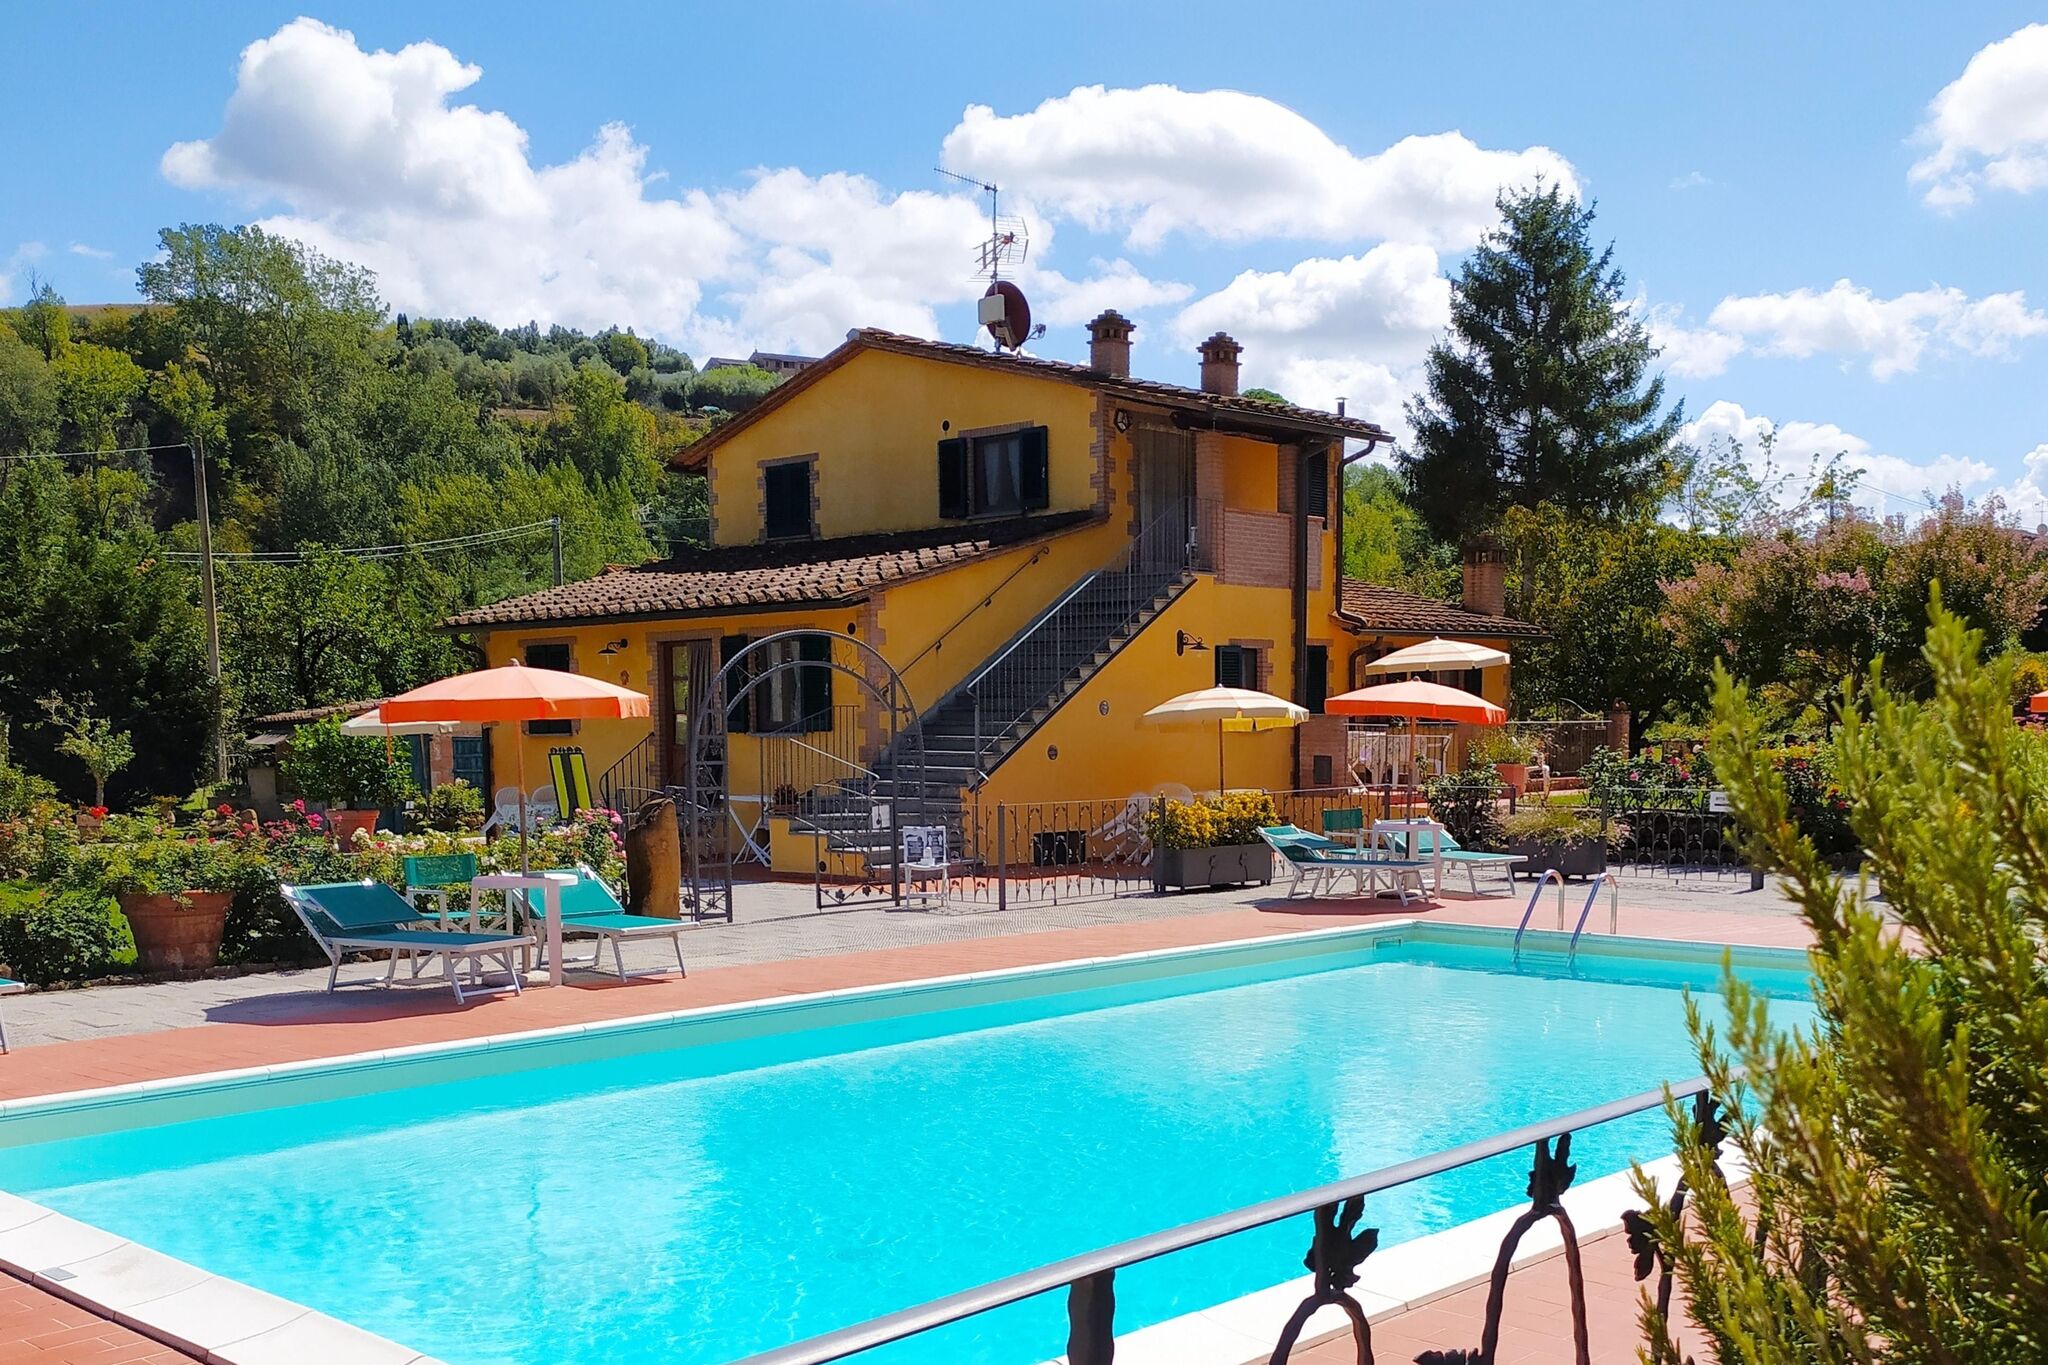 Appartements typiques de la campagne toscane avec piscine.